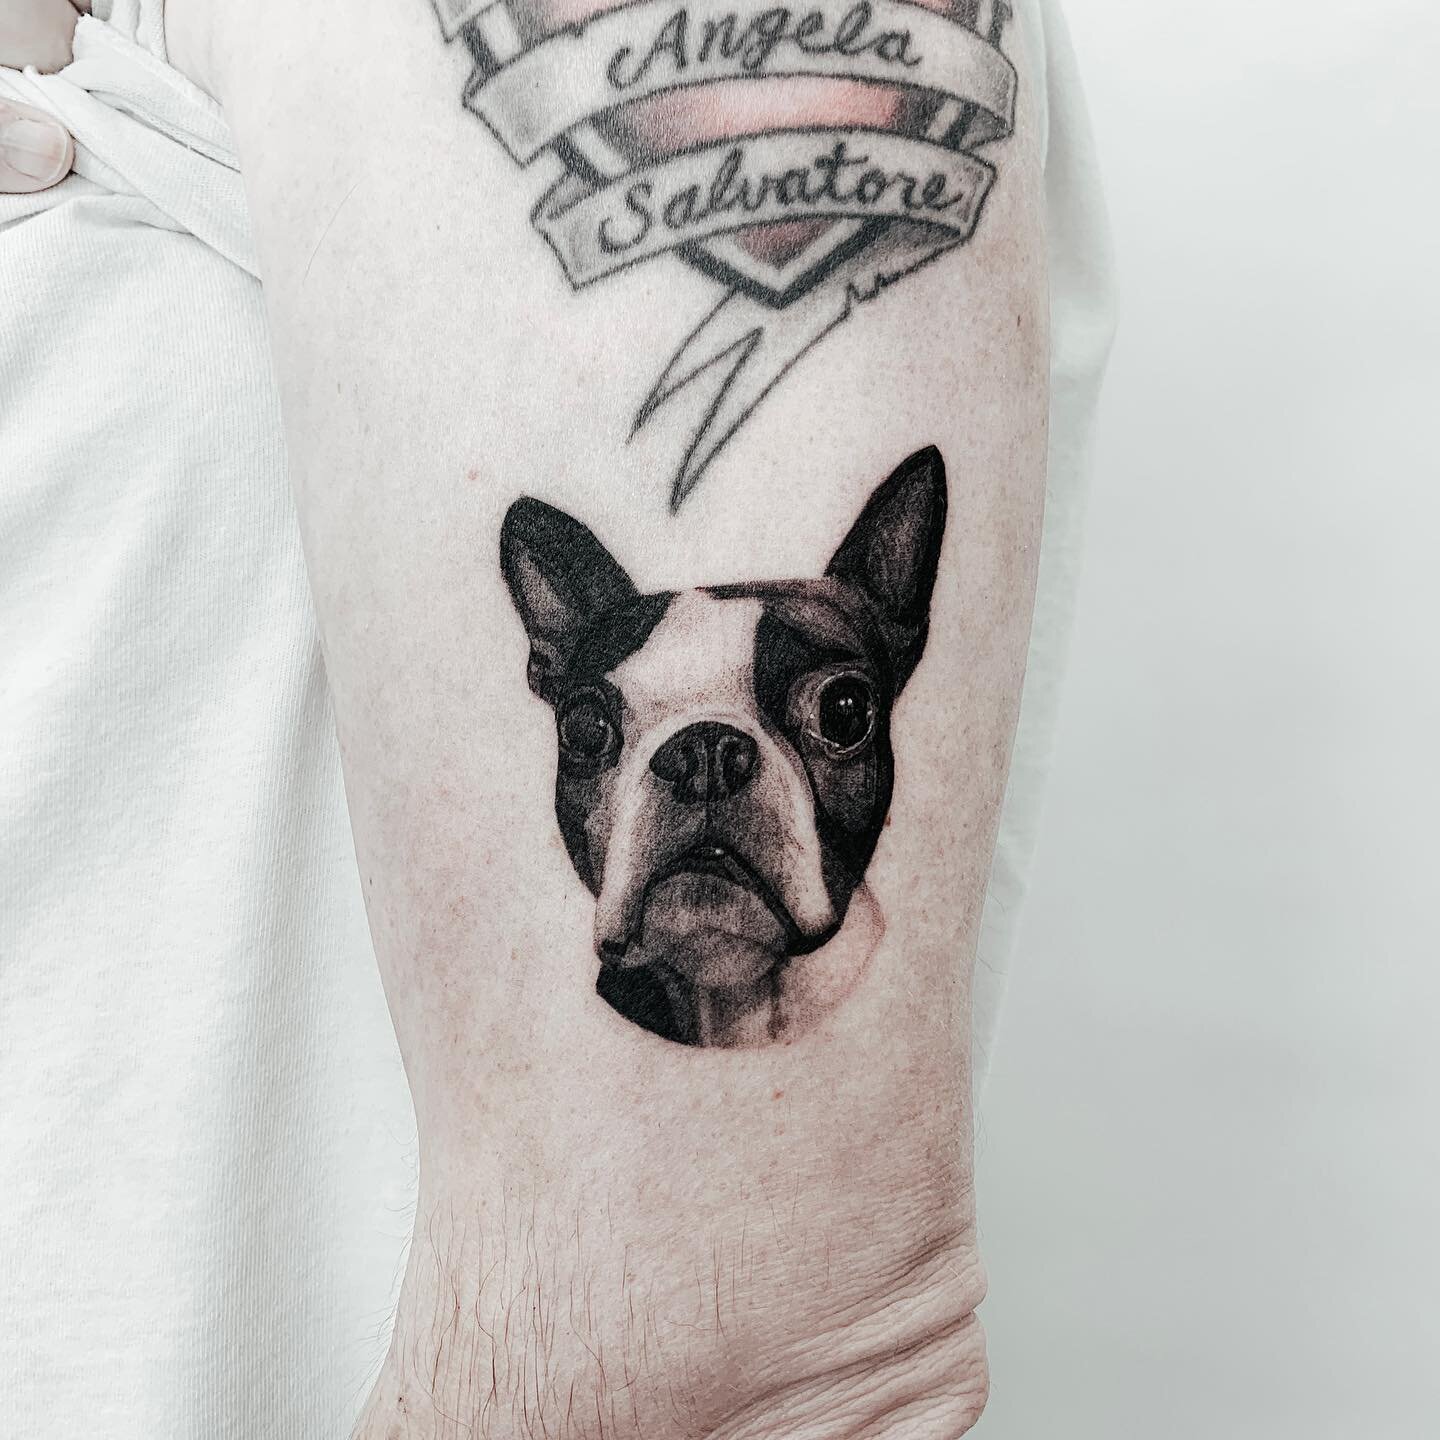 🐶
.
Done @inkandwatertattoo
.
.
#tattoo #tatt #realismtattoo #tattoostyle #torontotattoo #tattootoronto #black #blackwork #linework #skinart #torontoinknews #newtattoo #ink #tattooist #tattooart #tattooartist #tattoodesign #tattoostuff #art #dog #do